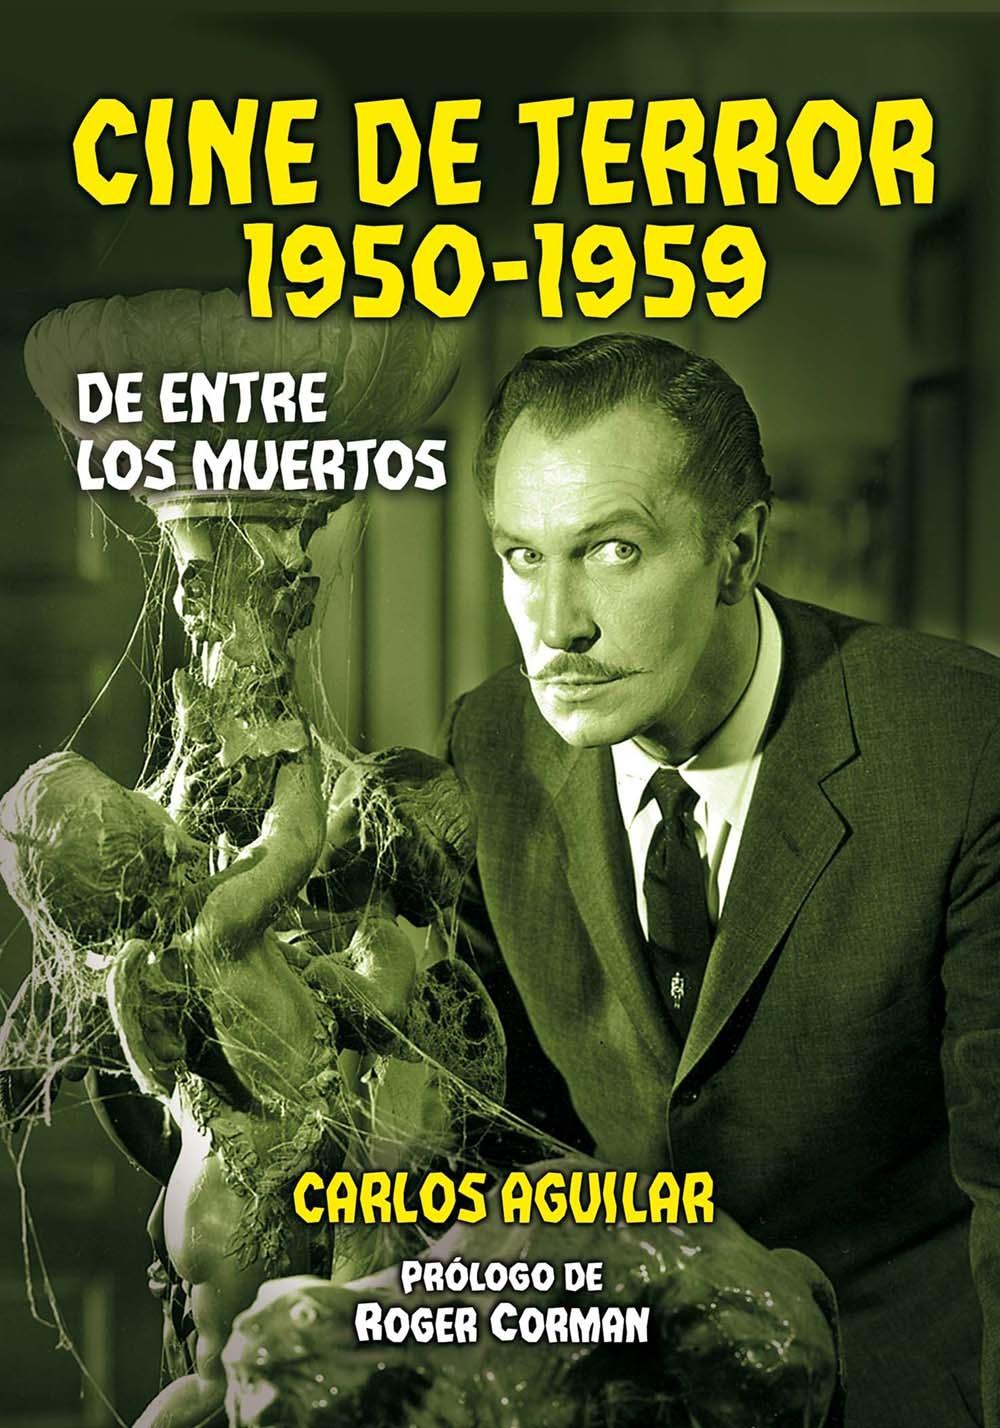 CINE DE TERROR. 1950-1959 "DE ENTRE LOS MUERTOS"